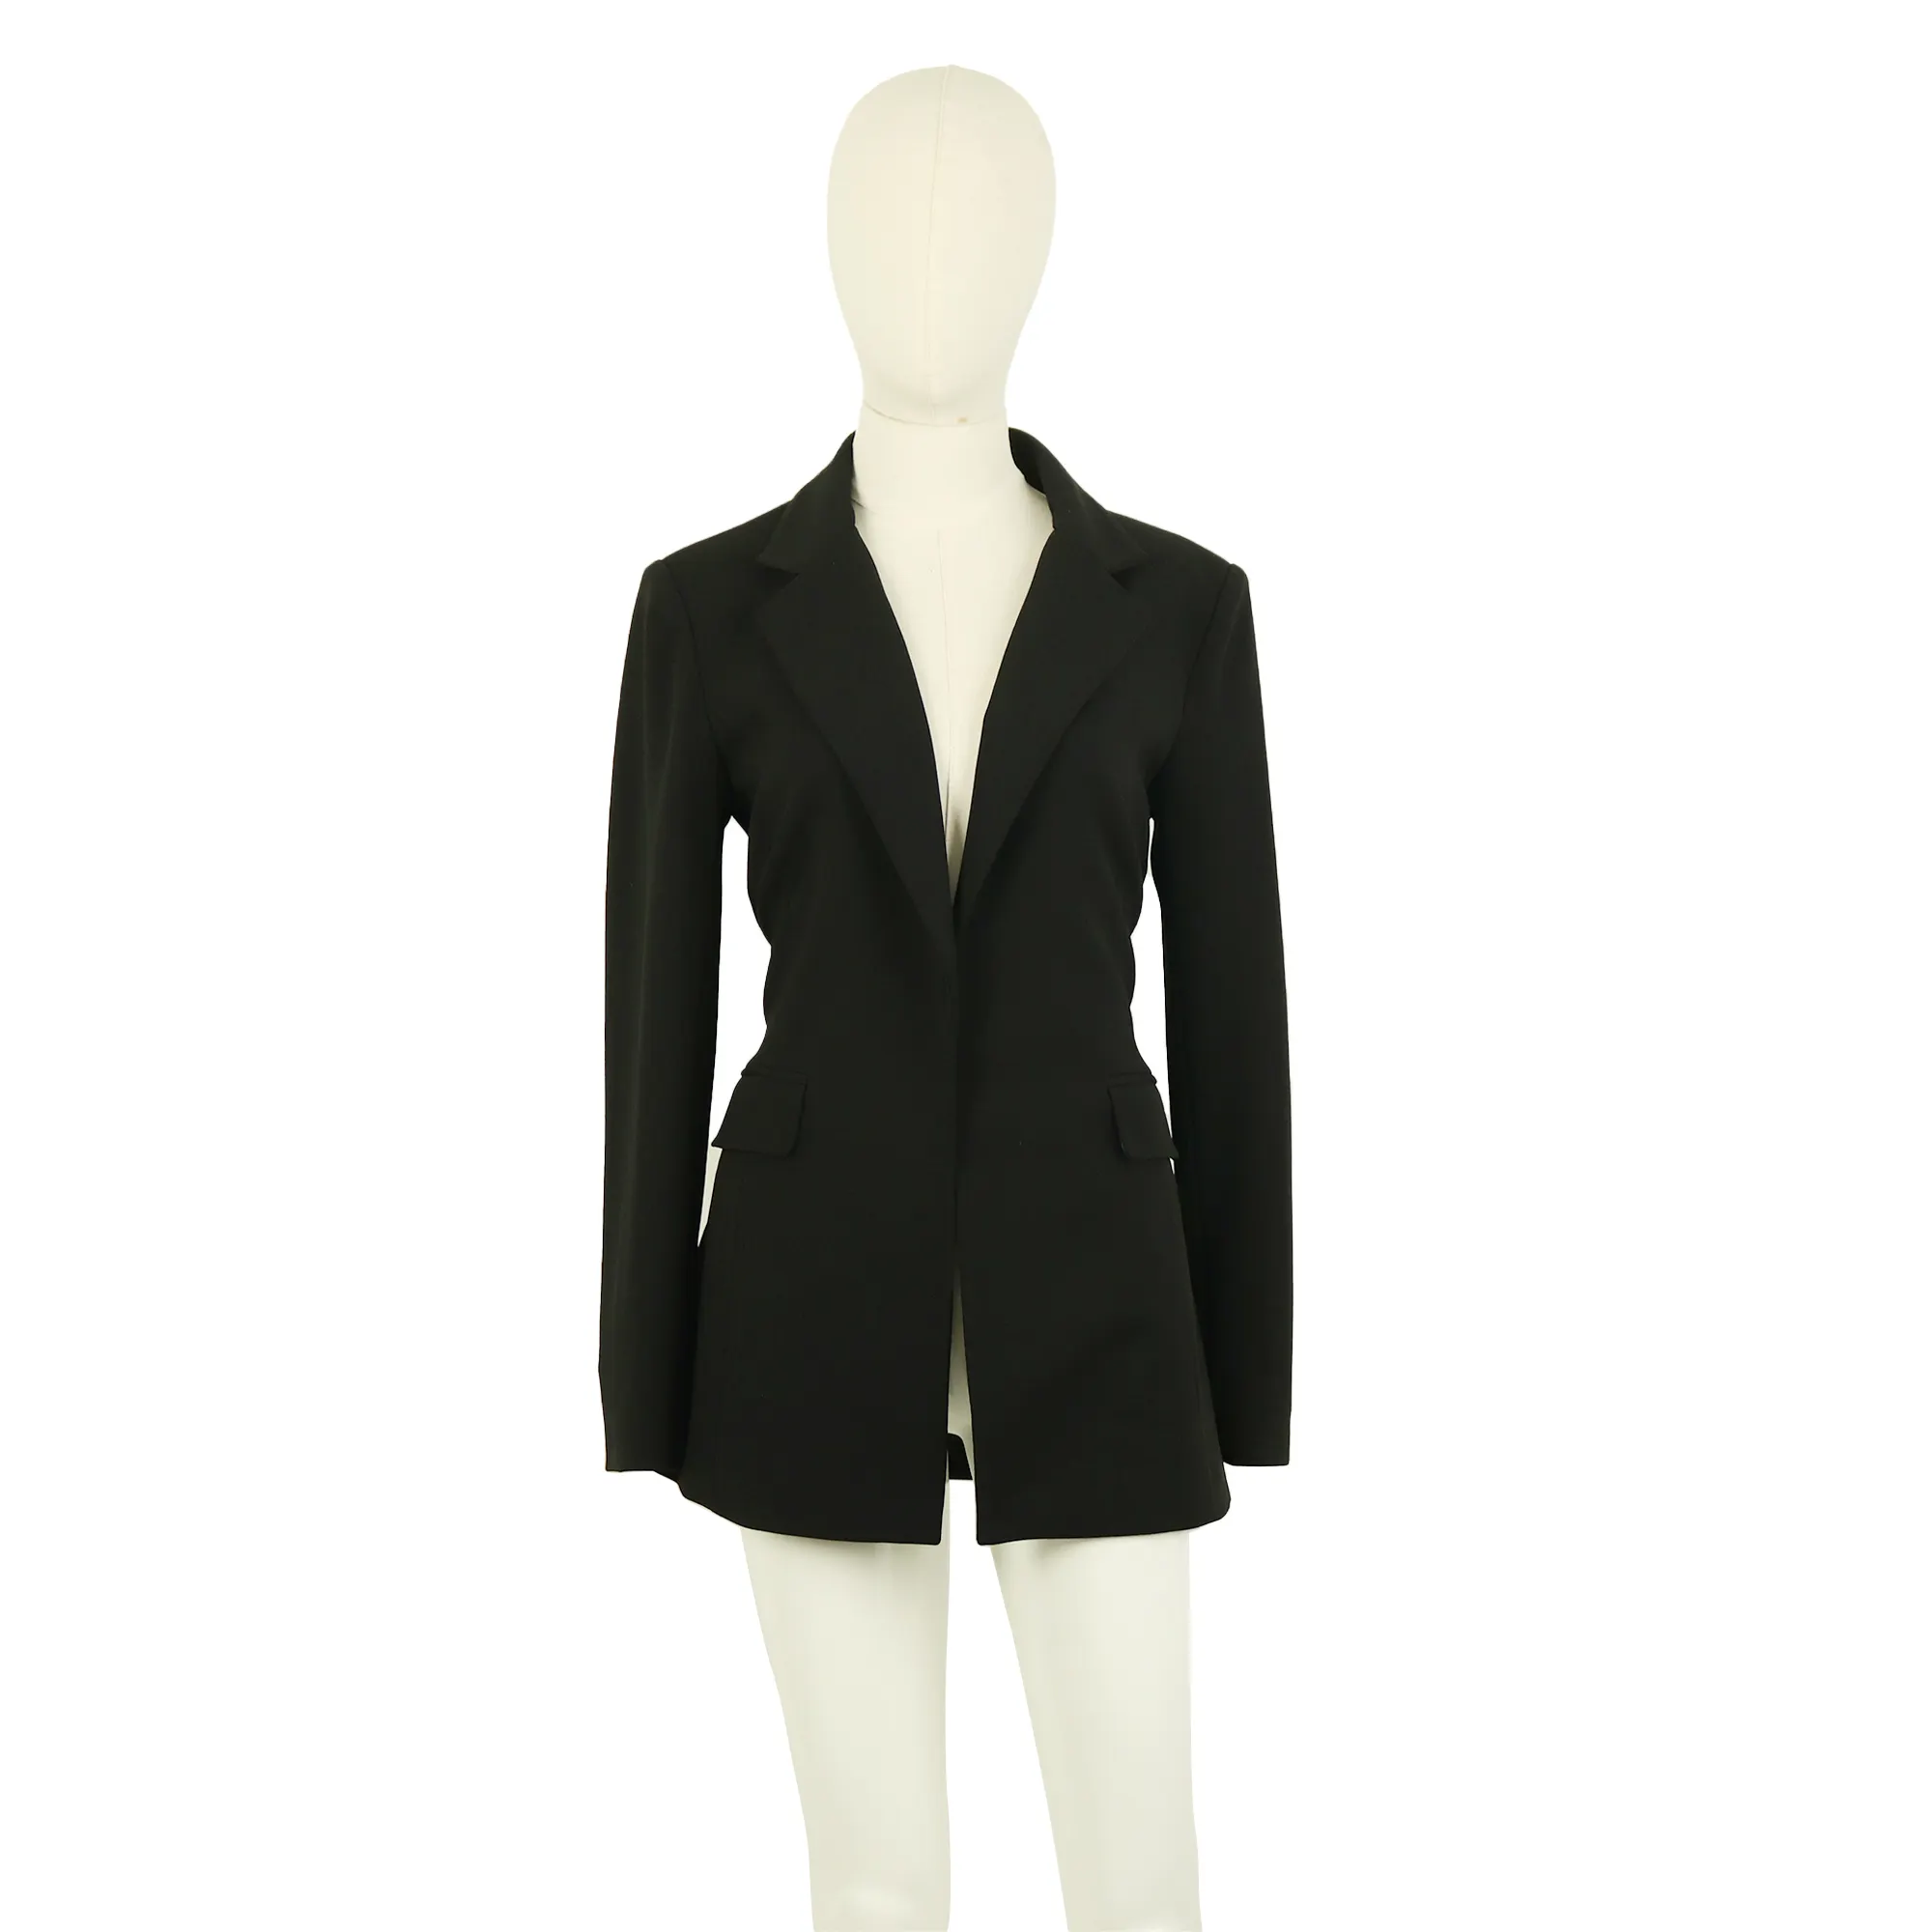 Custom autumn/spring ladies dresses elegant women coat black formal luxury long sleeves business wear work casual suit